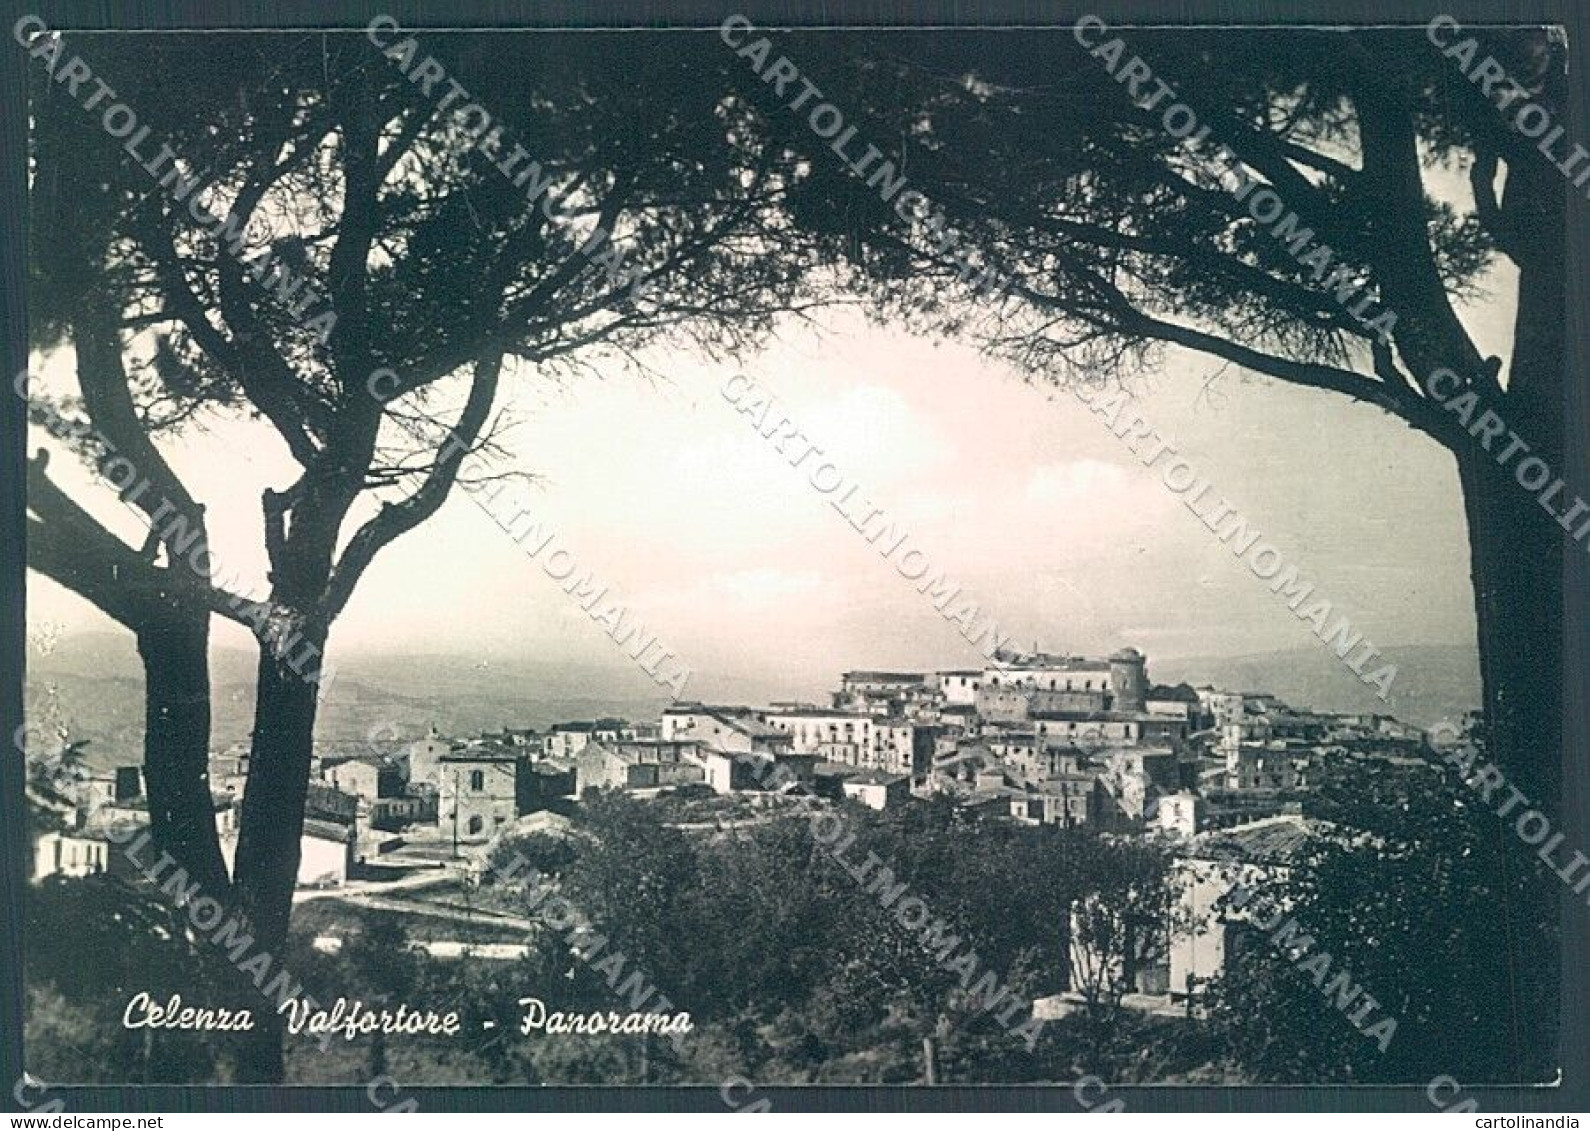 Foggia Celenza Valfortore Alterocca 19611 Foto FG Cartolina JK5985 - Foggia